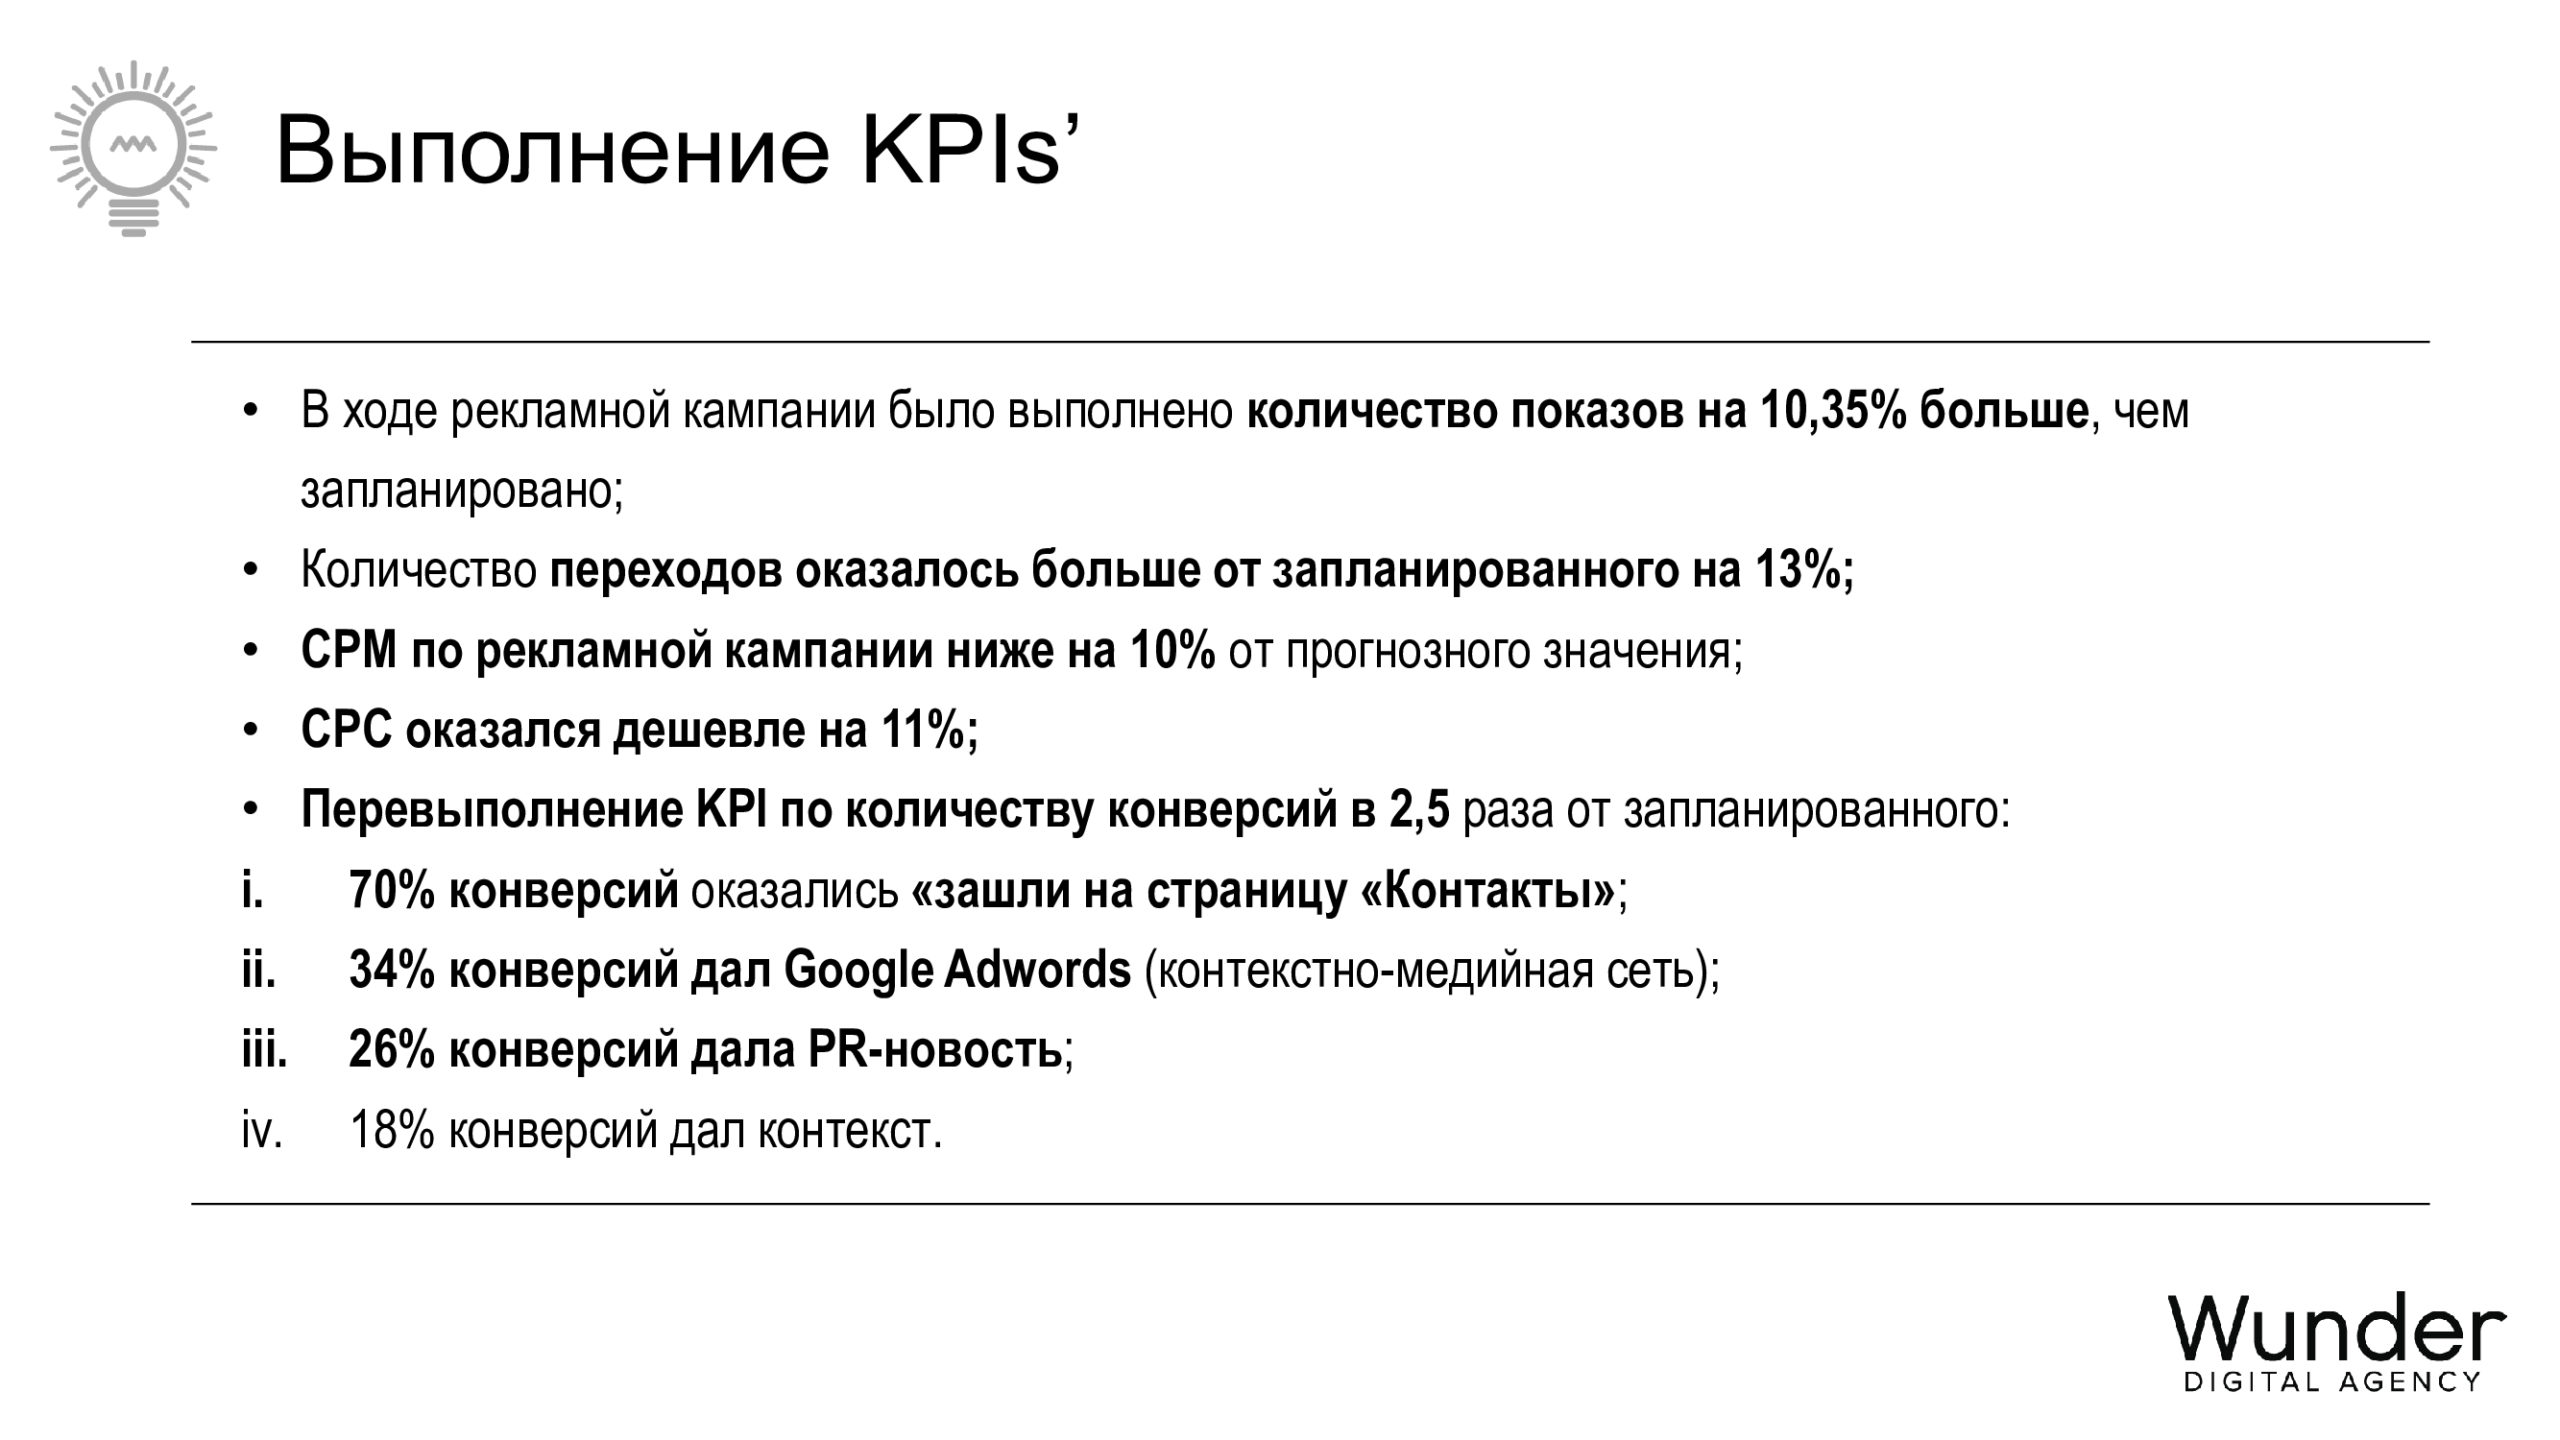 Перевыполнили KPI в 2,5 раза от запланированного — MINI